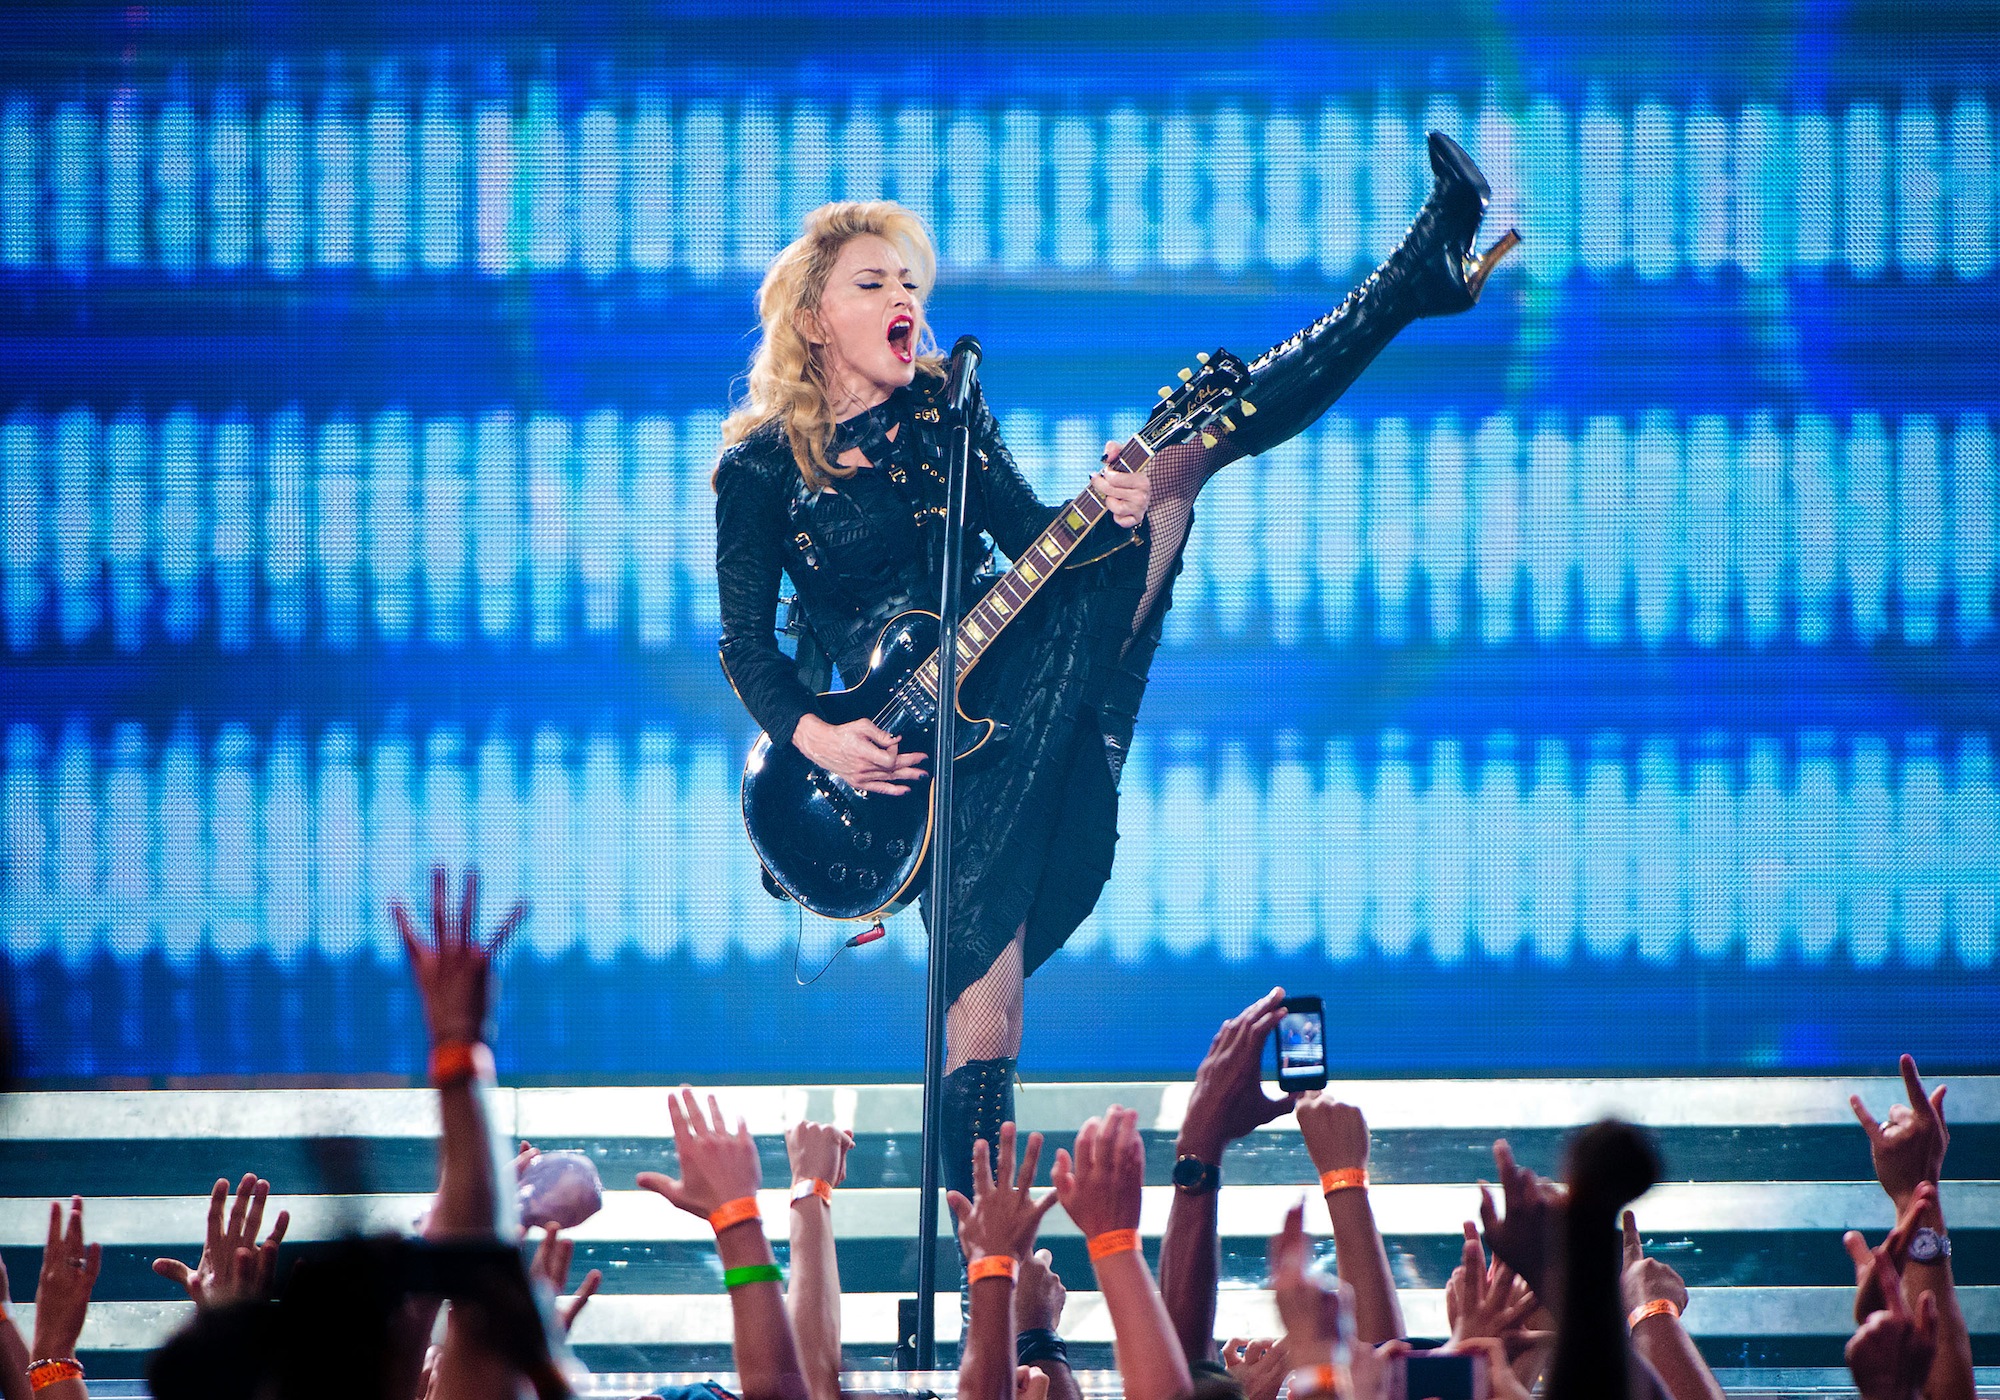 ‘Lengua, Cámara y Acción’: WTF? Madonna Makes How Much!?